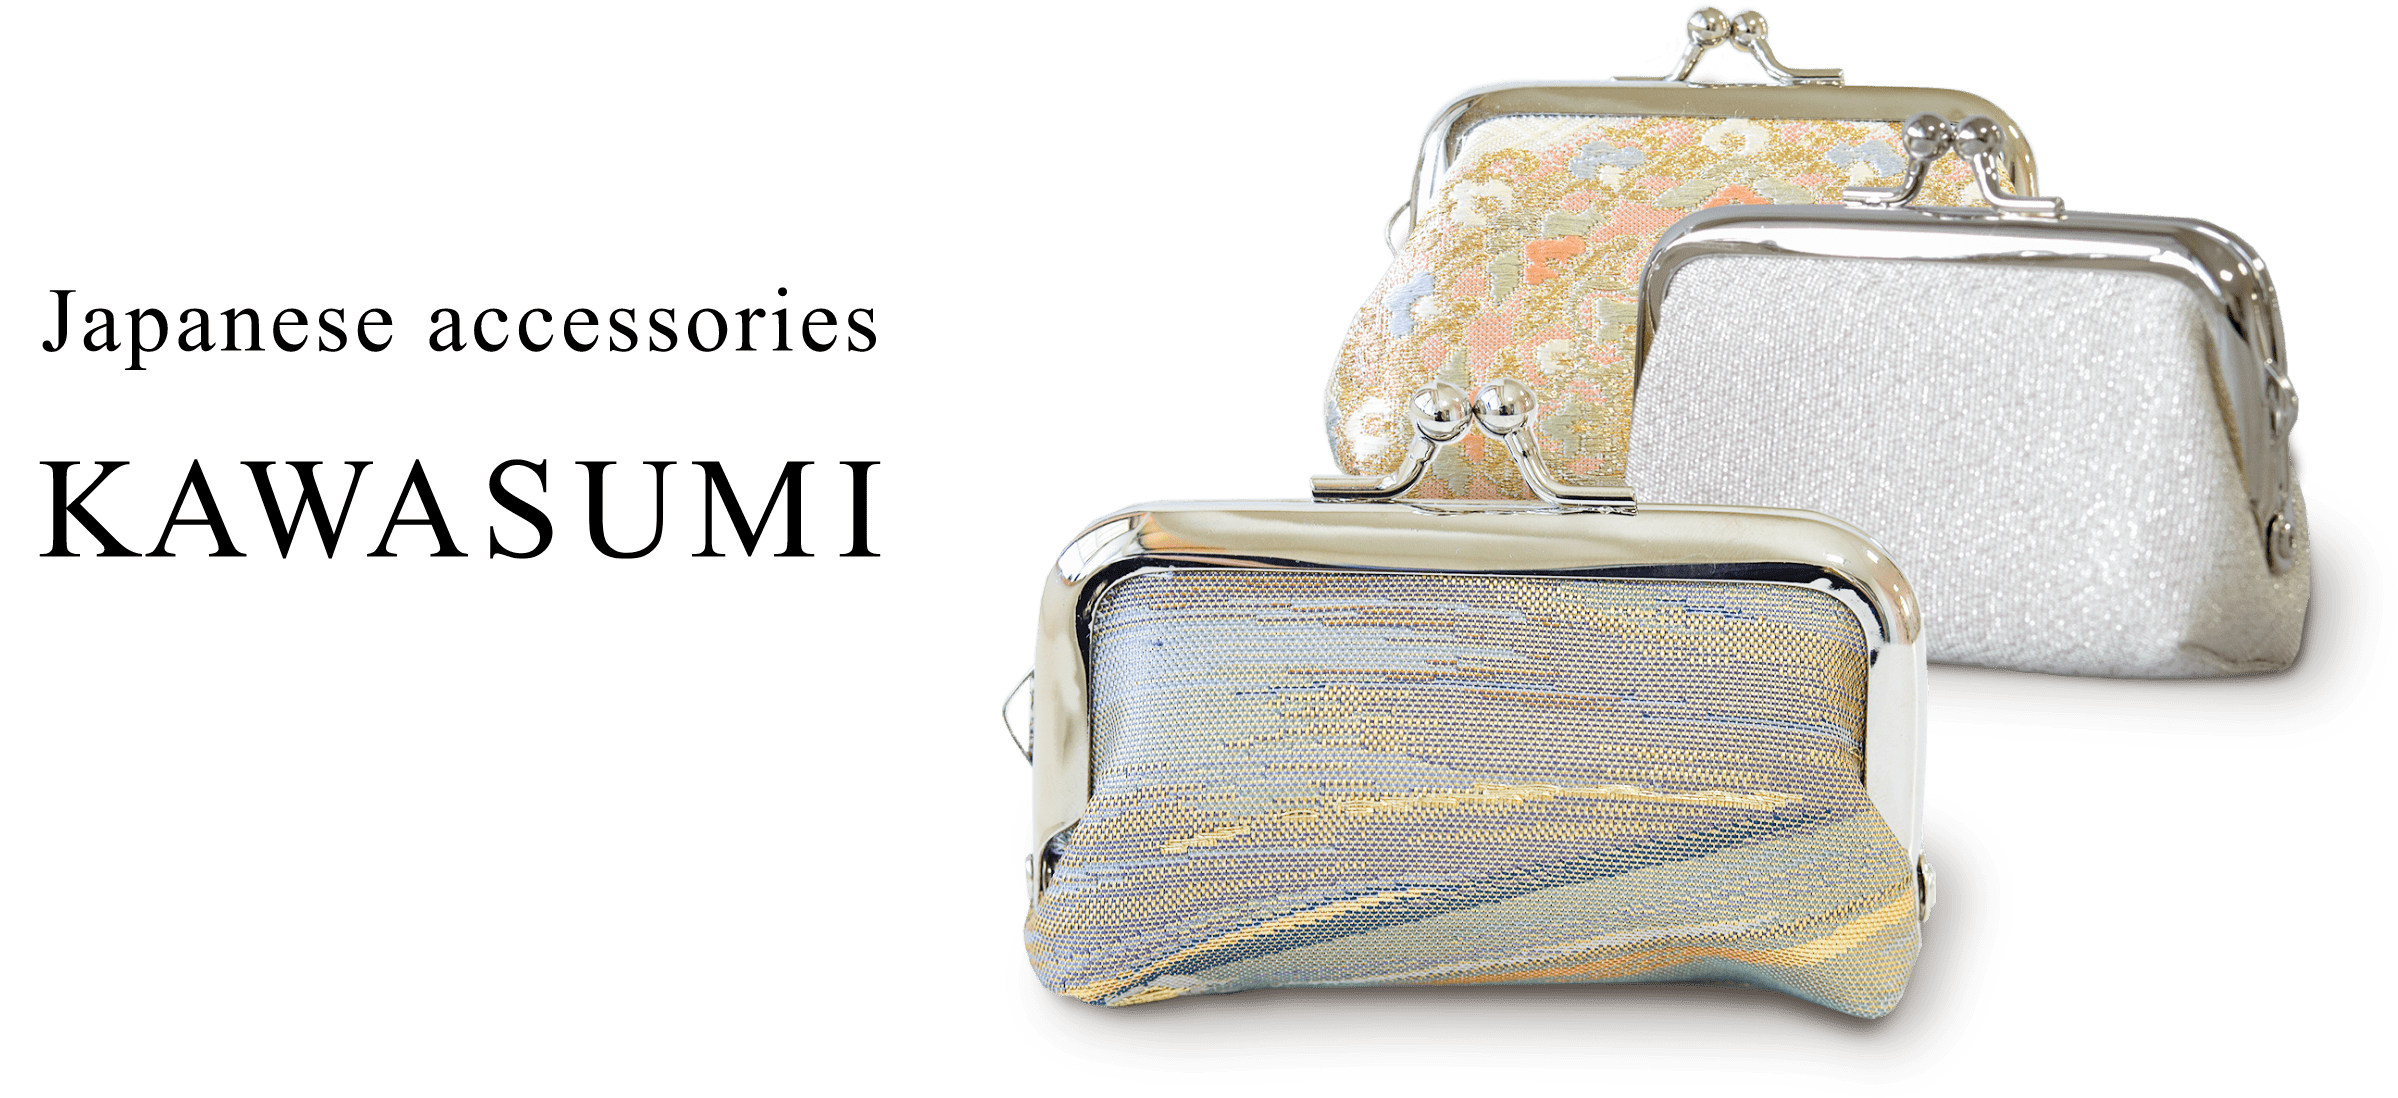 Japanese accessories KAWASUMI